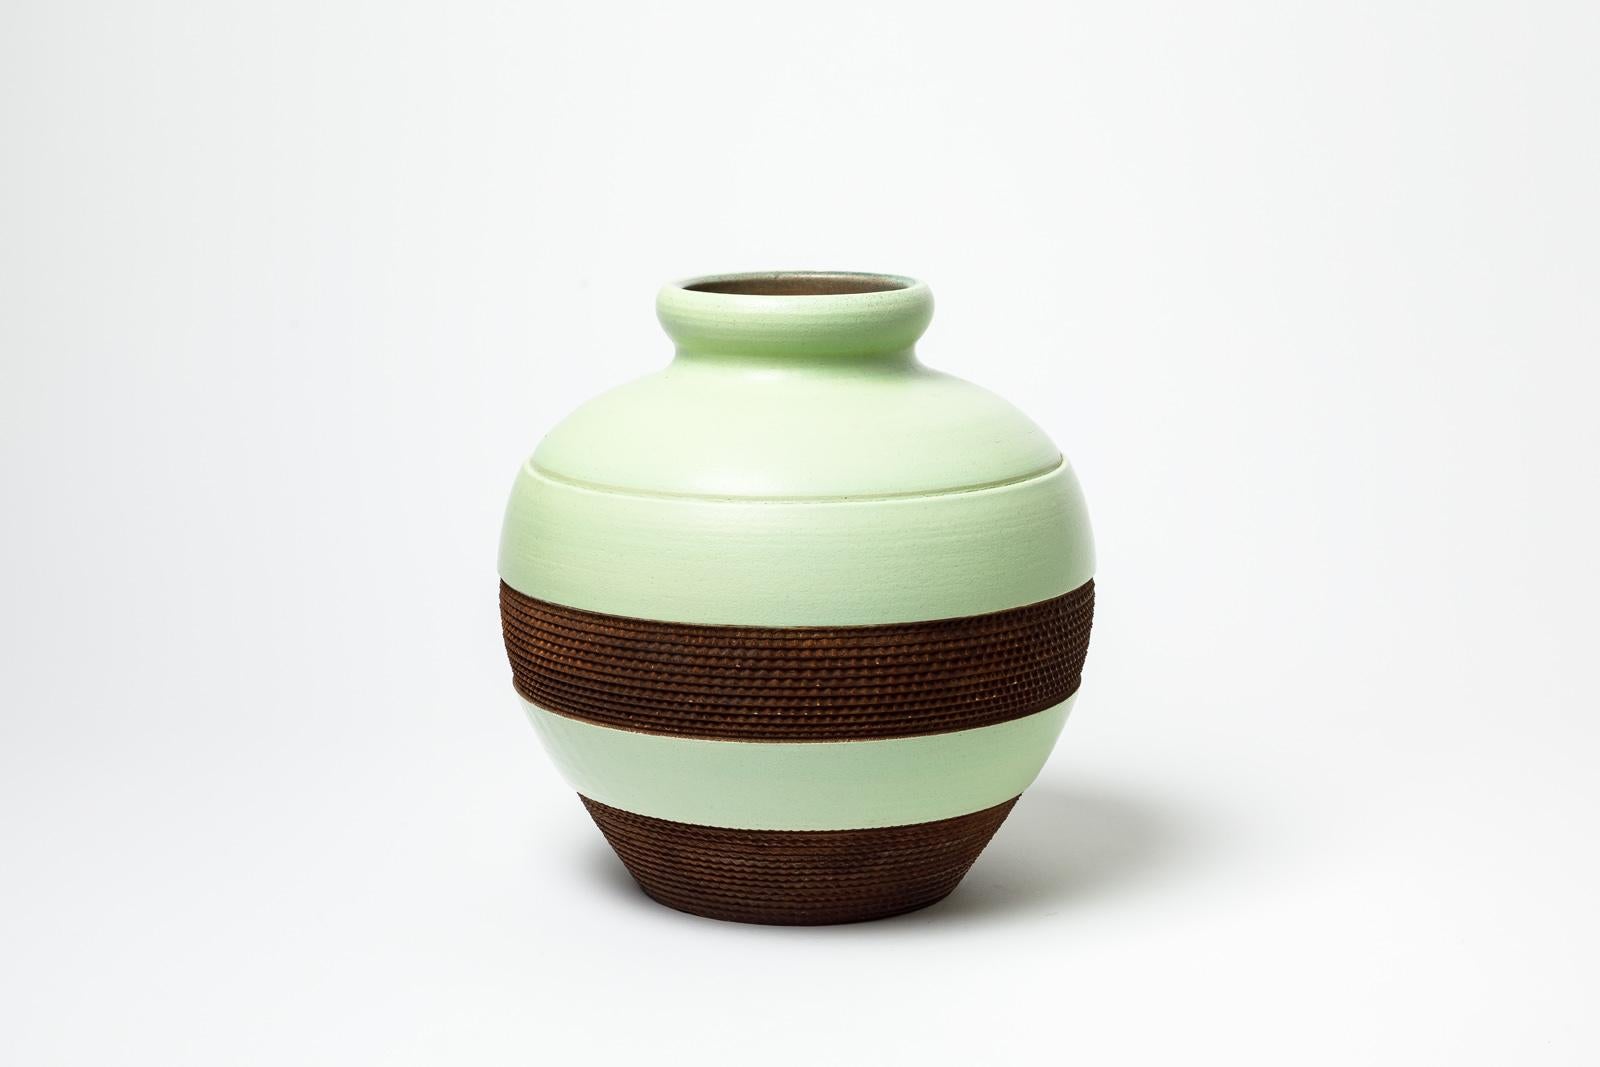 Vase aus grün und braun glasiertem Steingut von Pol Chambost.
Künstlersignatur unter dem Sockel. Um 1930.
H : 13,4' x 9,4' Zoll.
